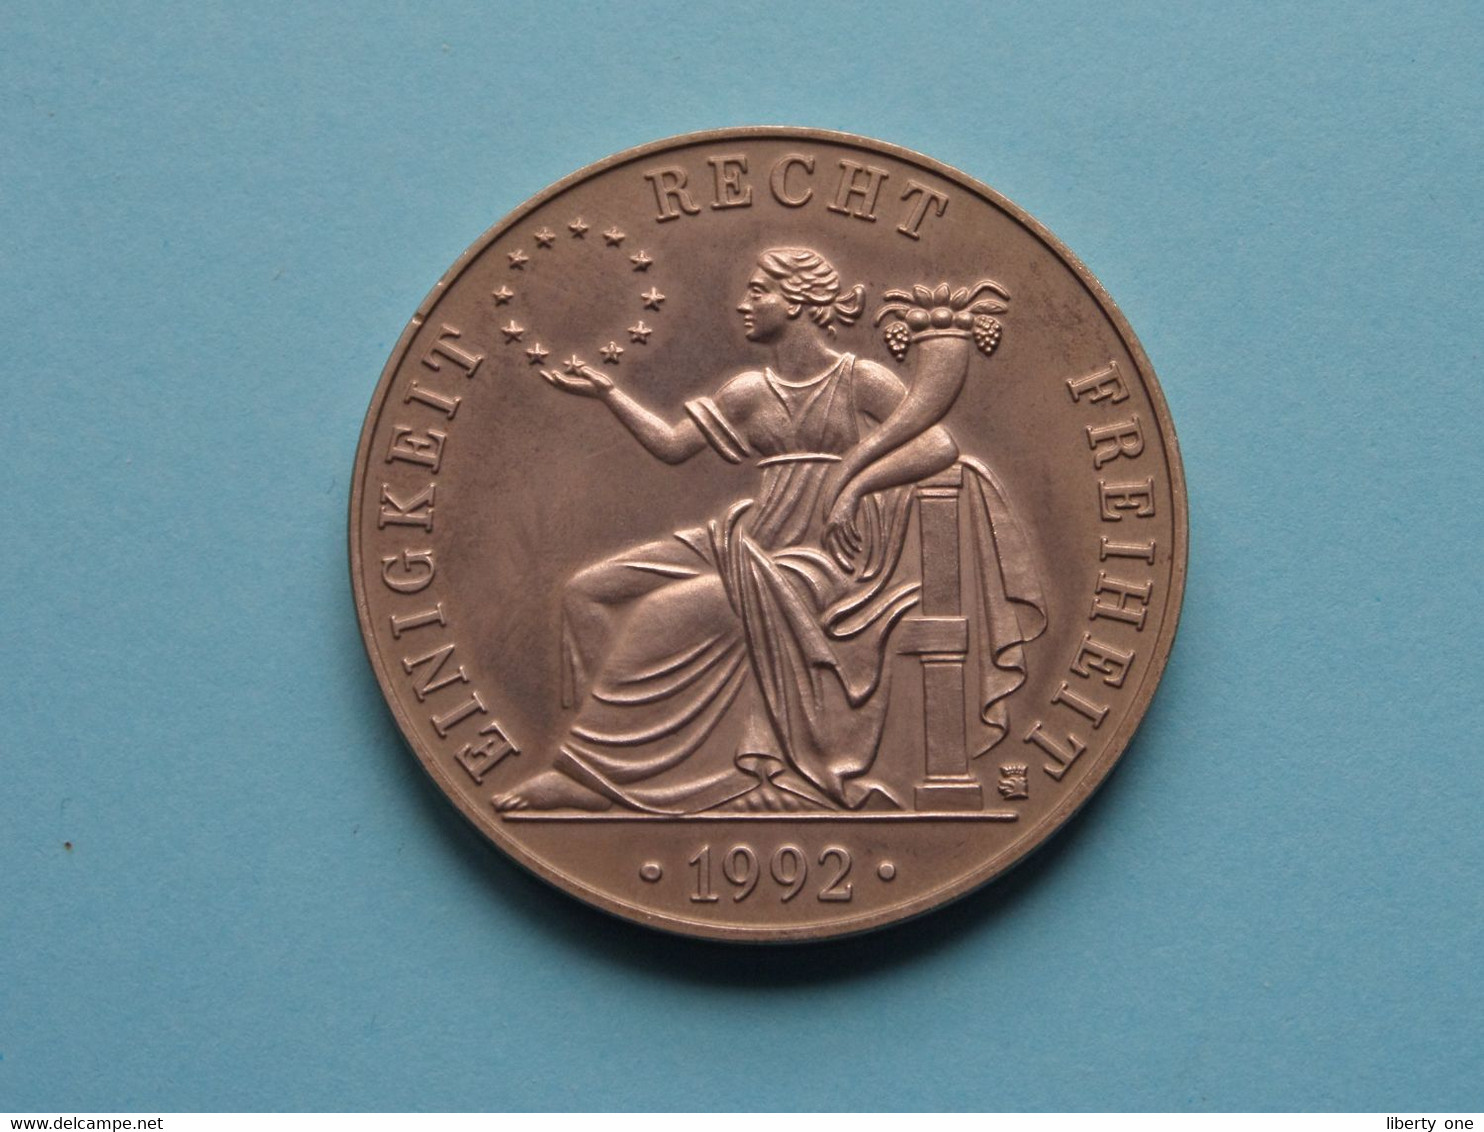 1992 > ECU DEUTSCHLAND - EUROPA Einigkeit / Recht / Freiheit ( For Grade, Please See Photo ) ! - Souvenir-Medaille (elongated Coins)